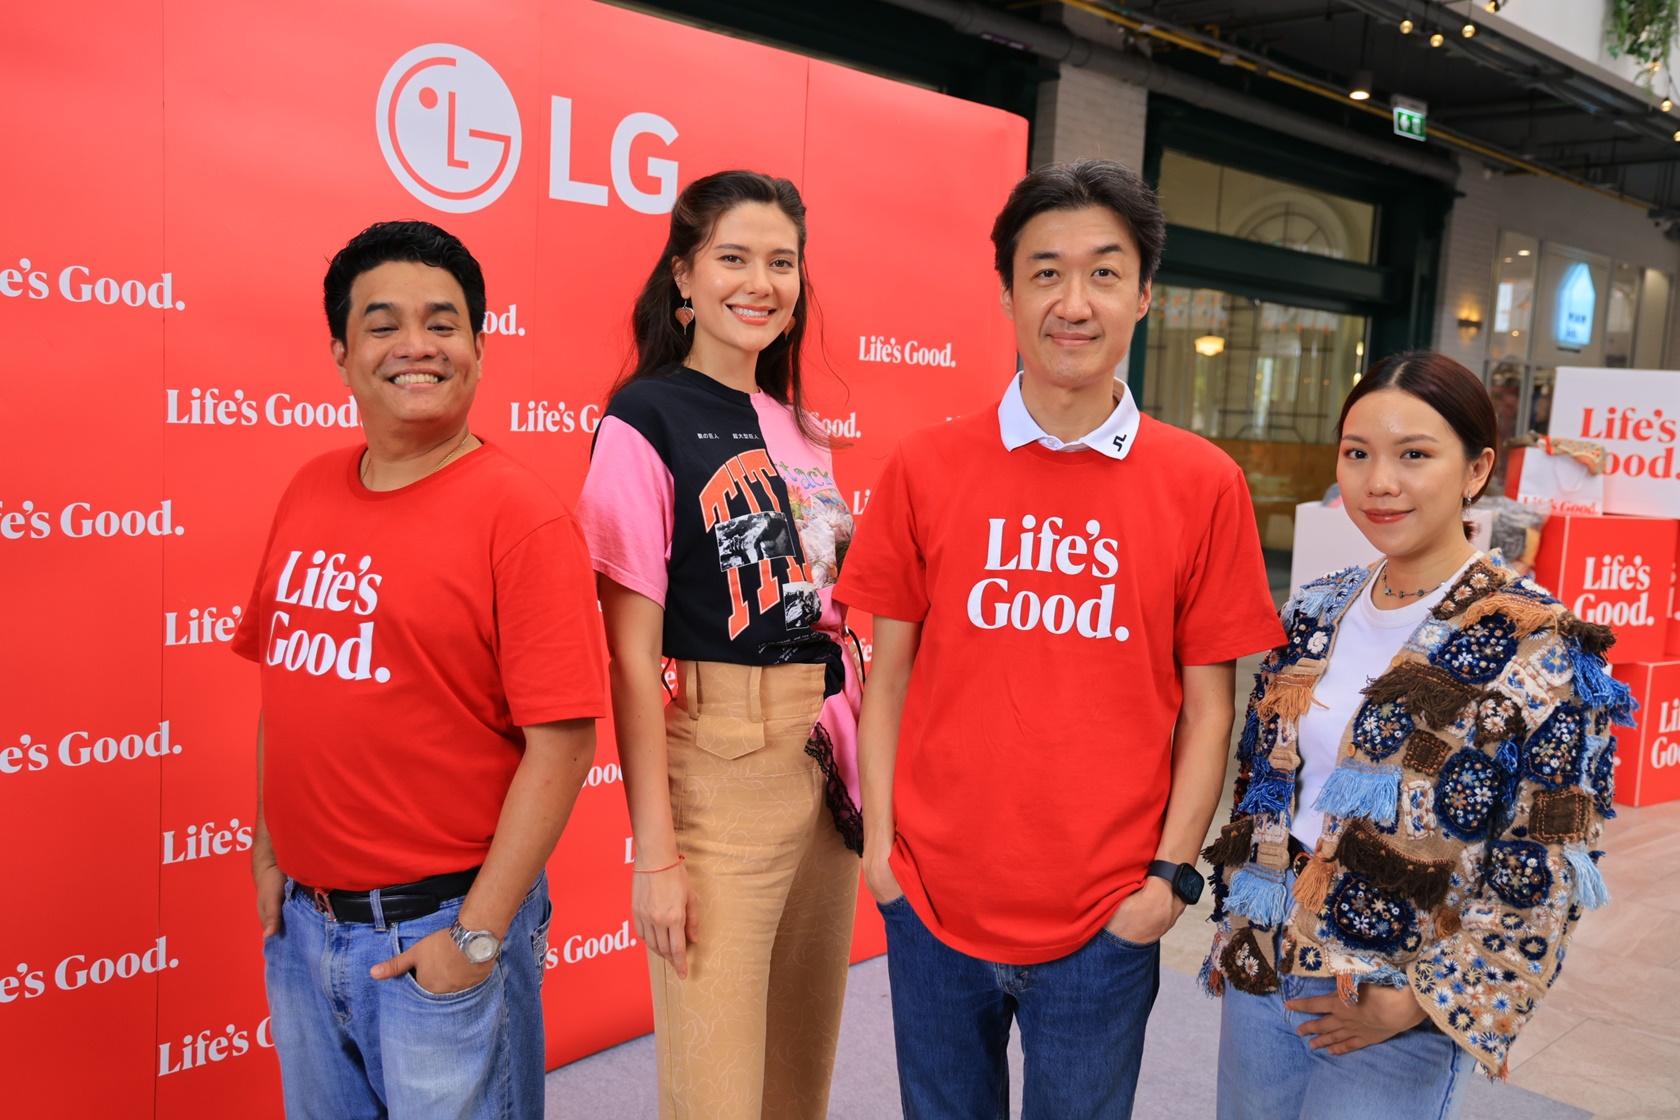 แอลจี จัดงาน LG Eco Day 2023 ร่วมจุดประกายเทรนด์ Slow Fashion  ลดปัญหาขยะจากเสื้อผ้า เพื่อโลกและชีวิตที่ดีไปพร้อมกัน